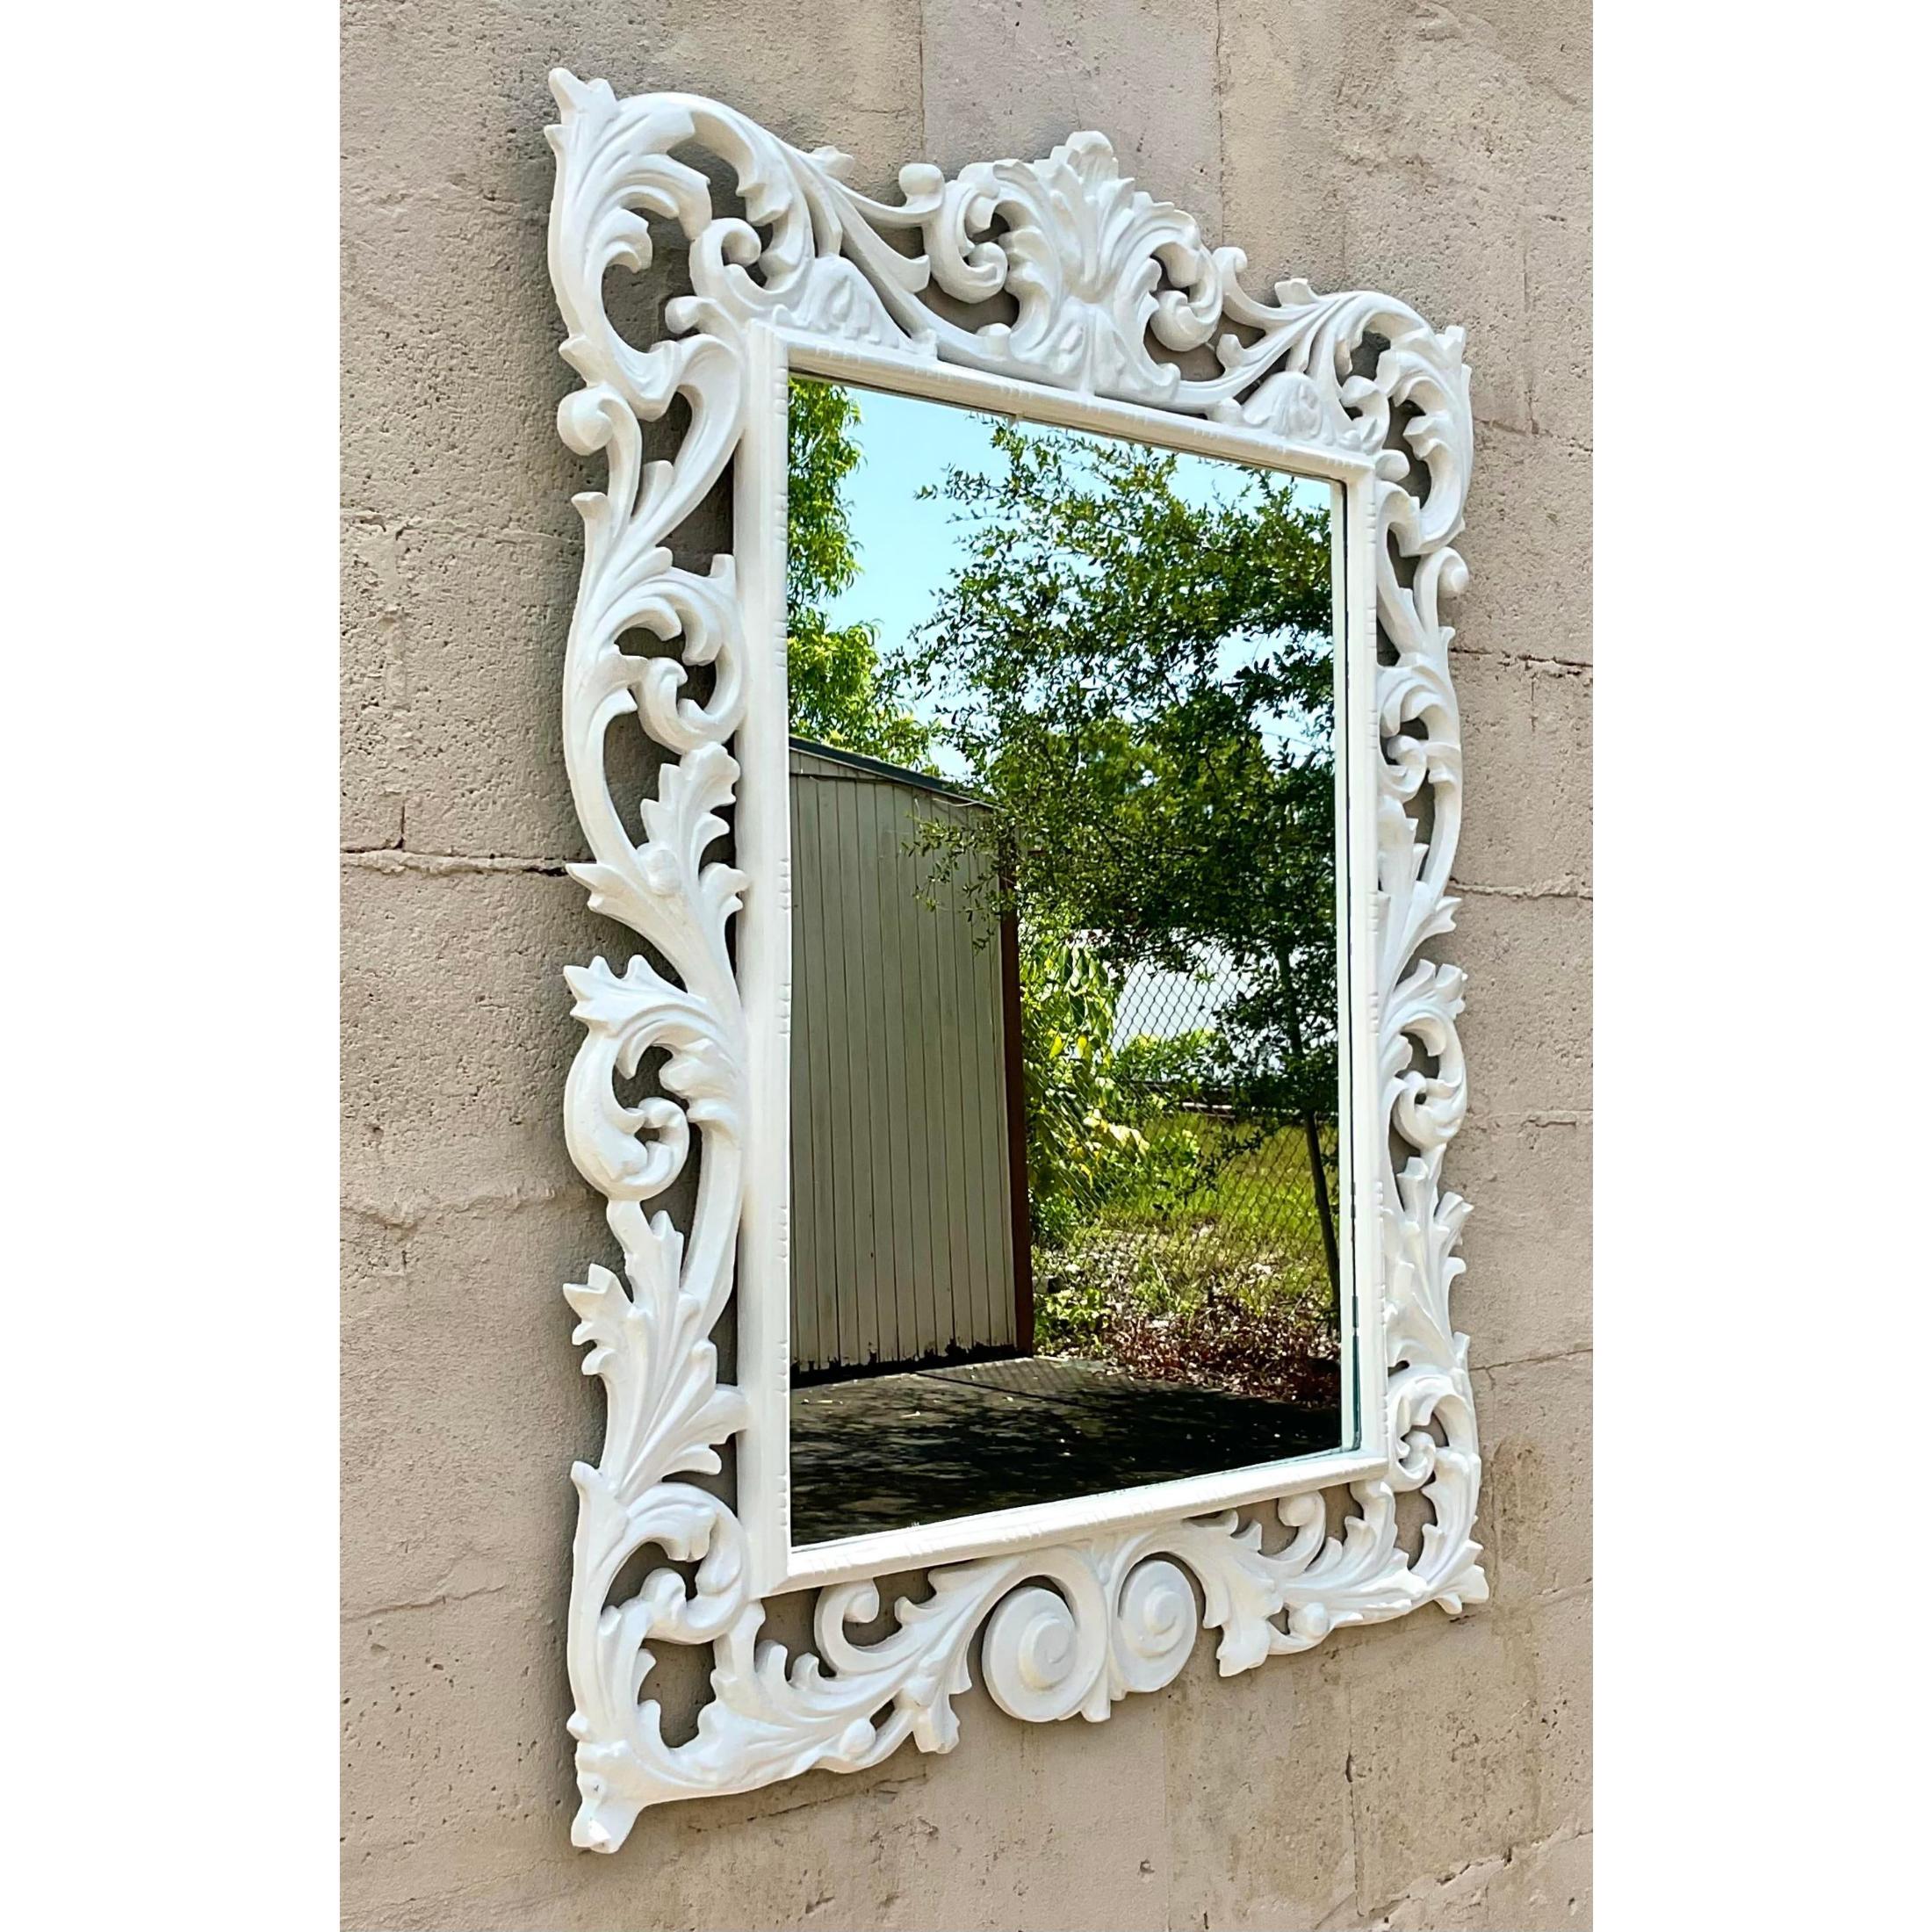 Fantastischer Vintage-Regency-Spiegel. Wunderschöne geschnitzte Details in einer hellen, weiß lackierten Oberfläche. Erworben aus einem Nachlass in Palm Beach.